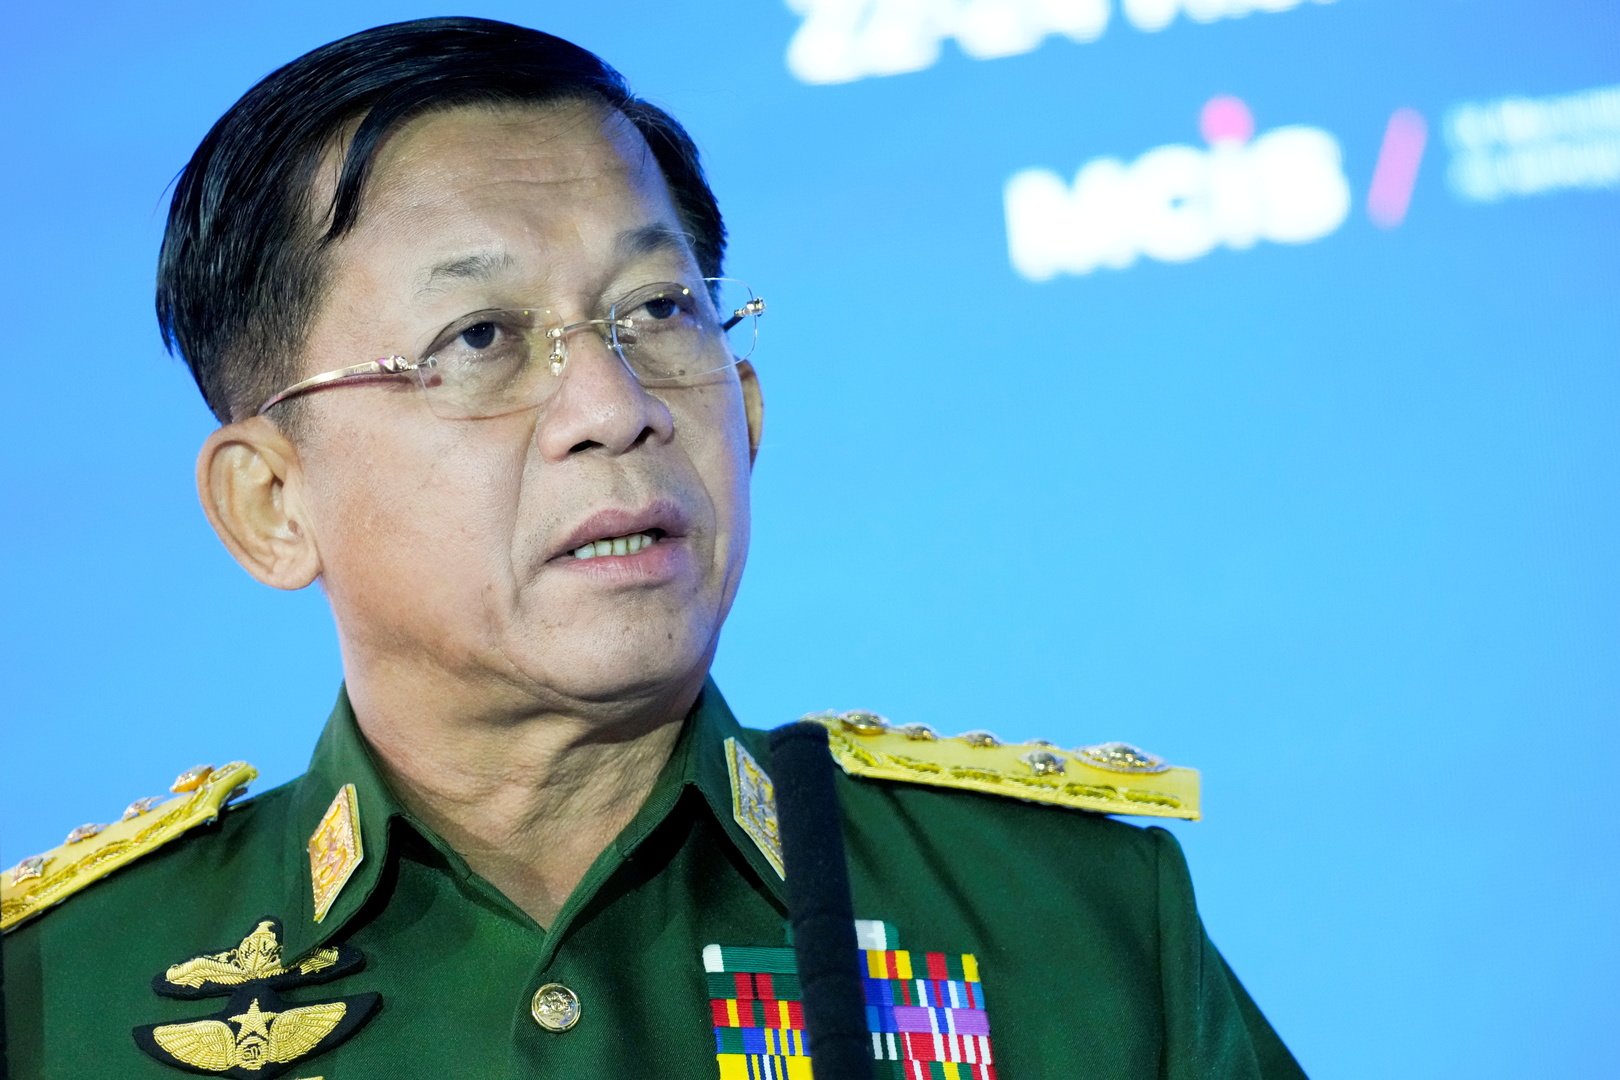 وسائل إعلام رسمية: حاكم ميانمار العسكري يصبح رئيسا للوزراء